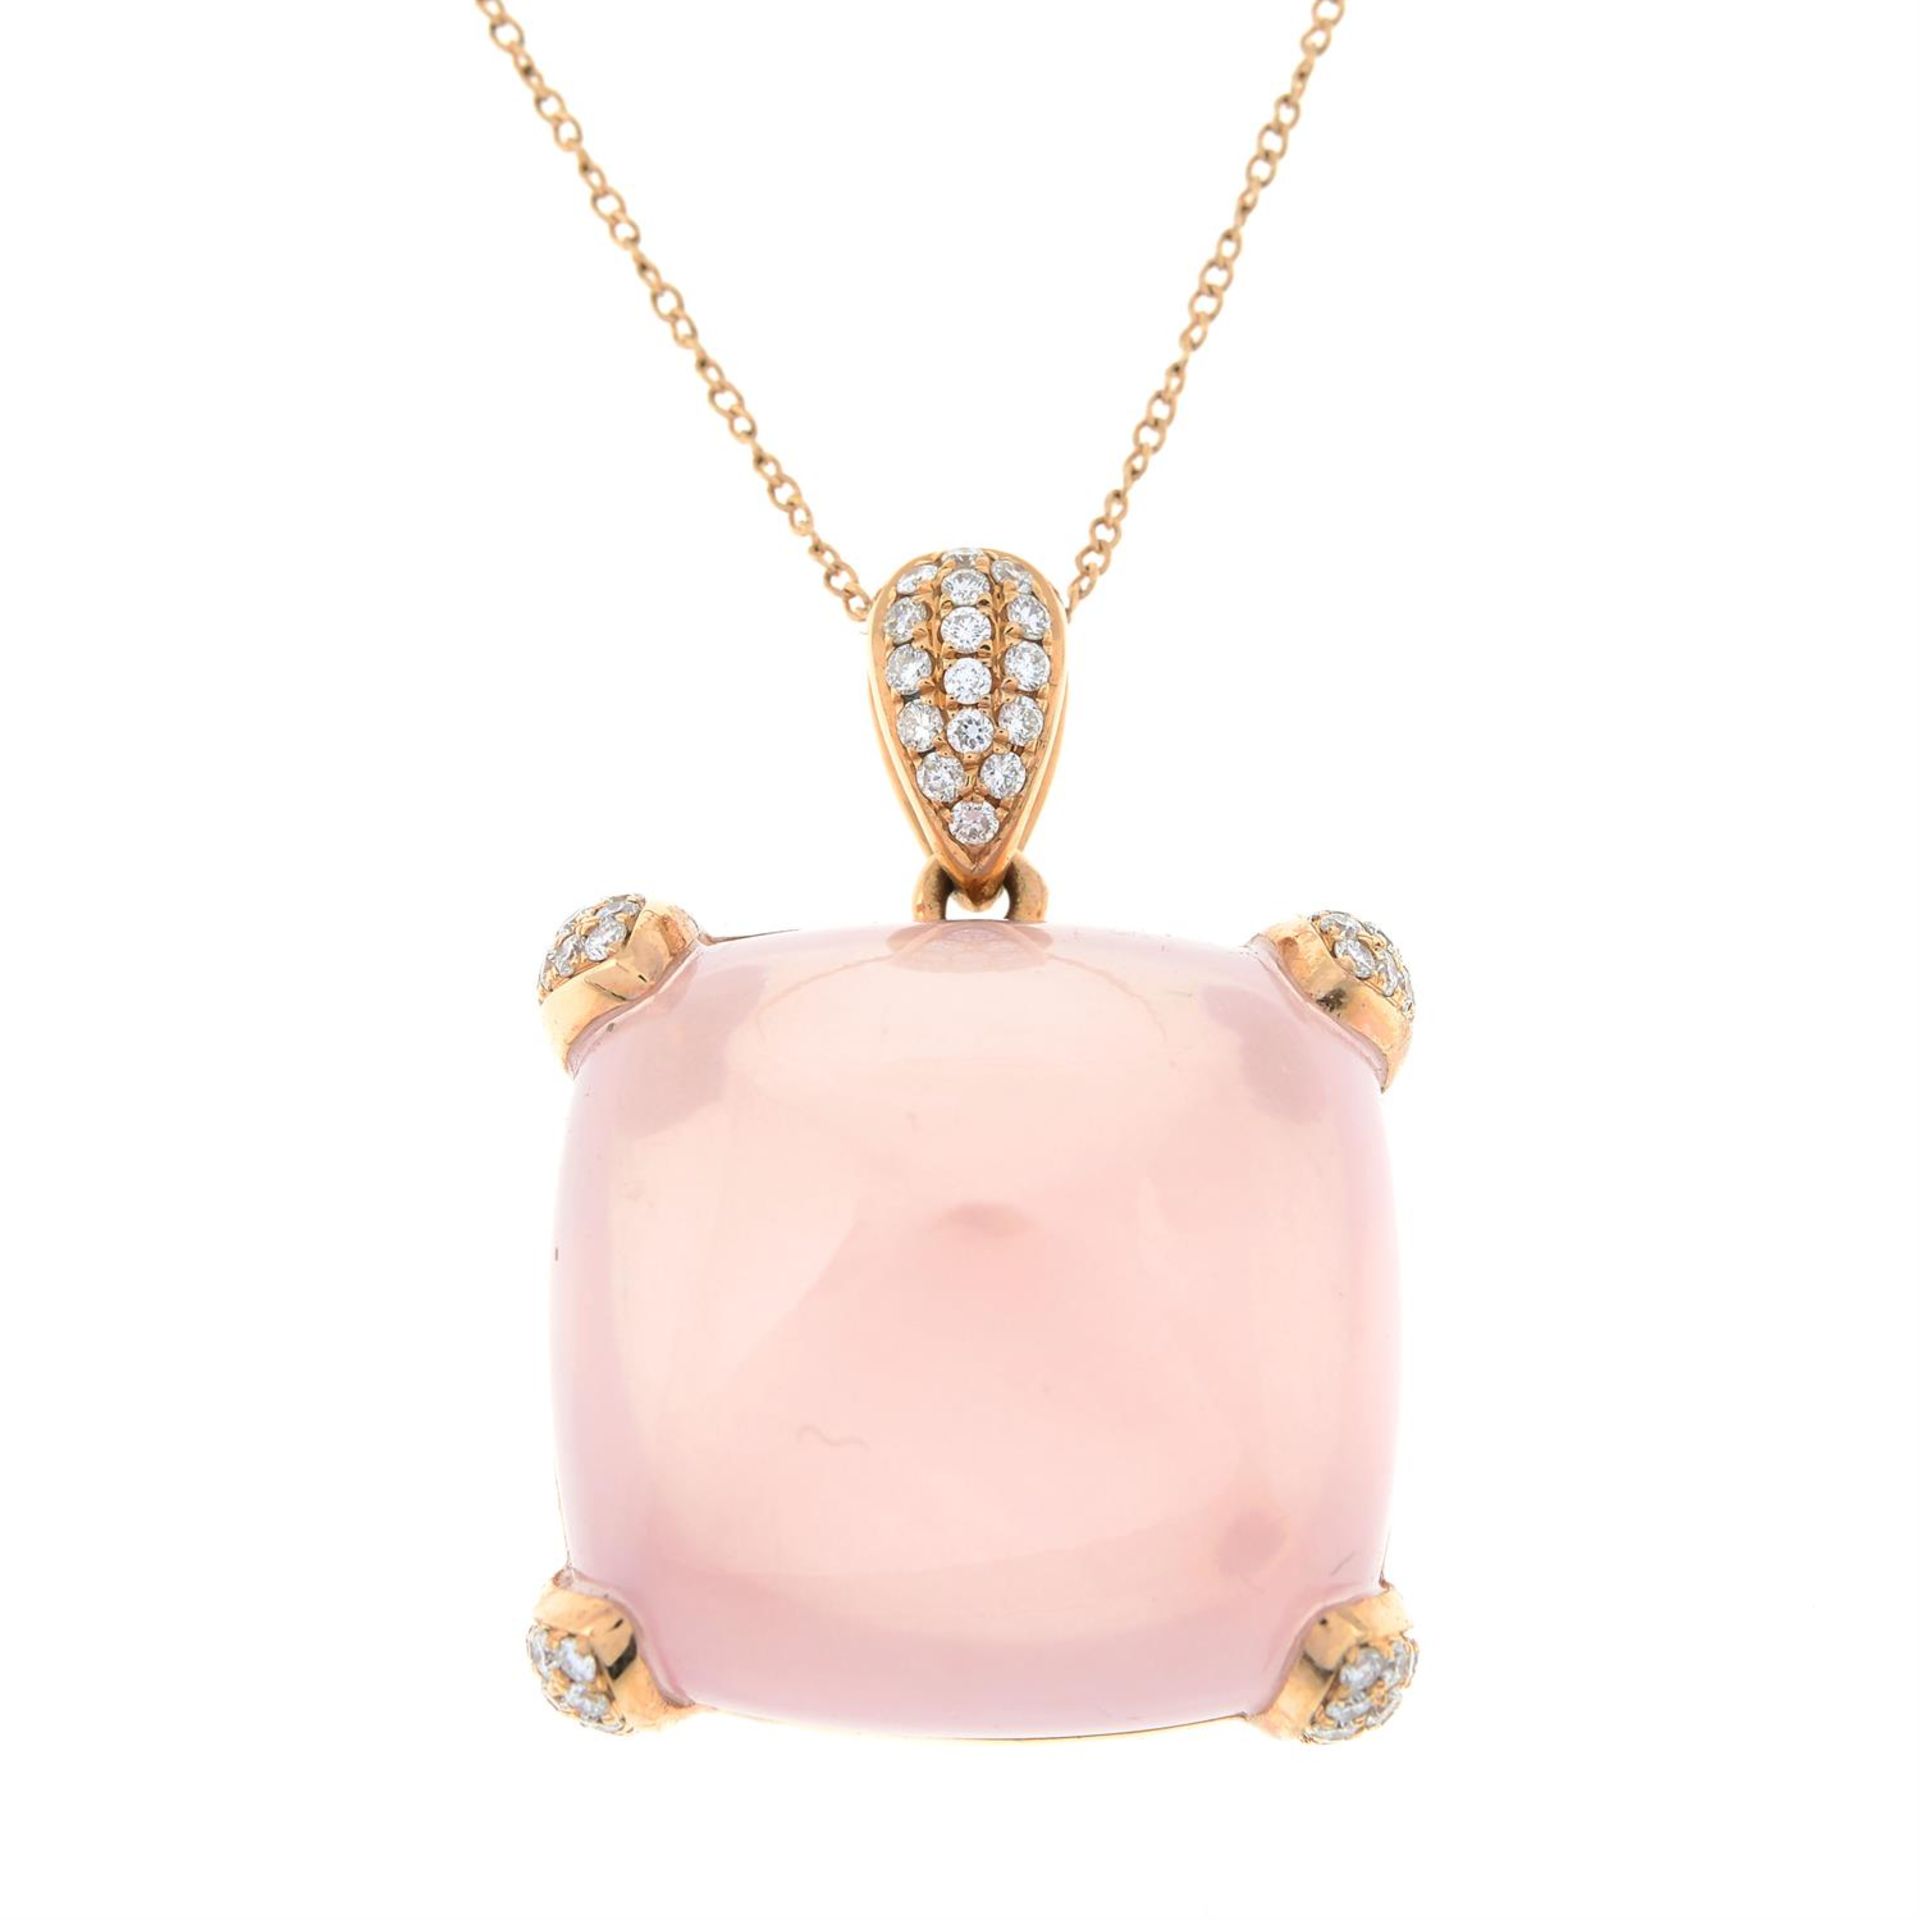 A rose quartz and pavé-set diamond pendant, with 18ct gold chain. - Bild 2 aus 6